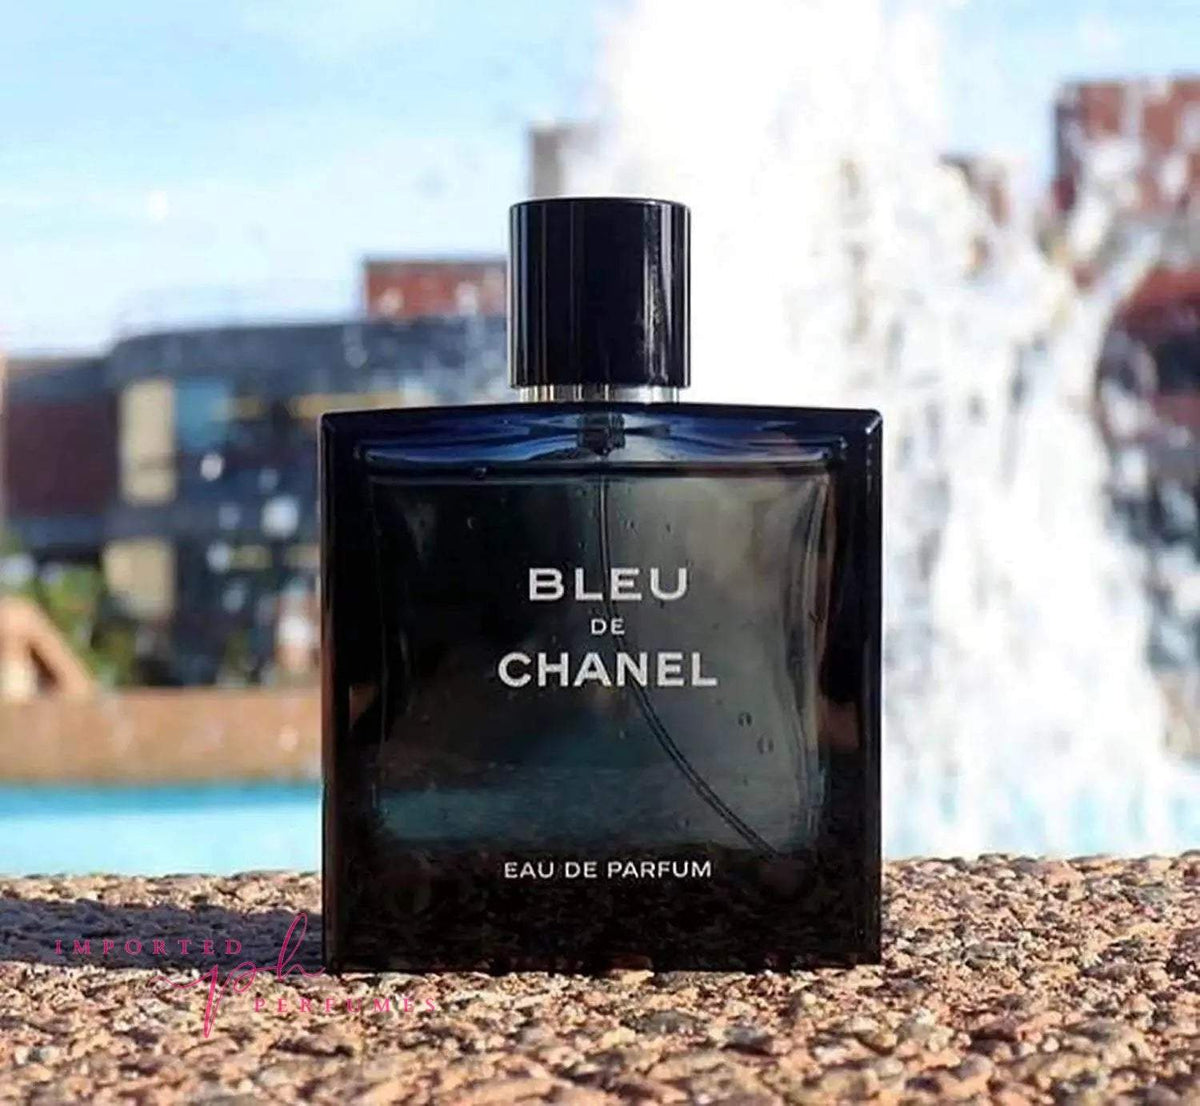 Perfume Bleu De Chanel Eau de Parfum Perfume Tester for test